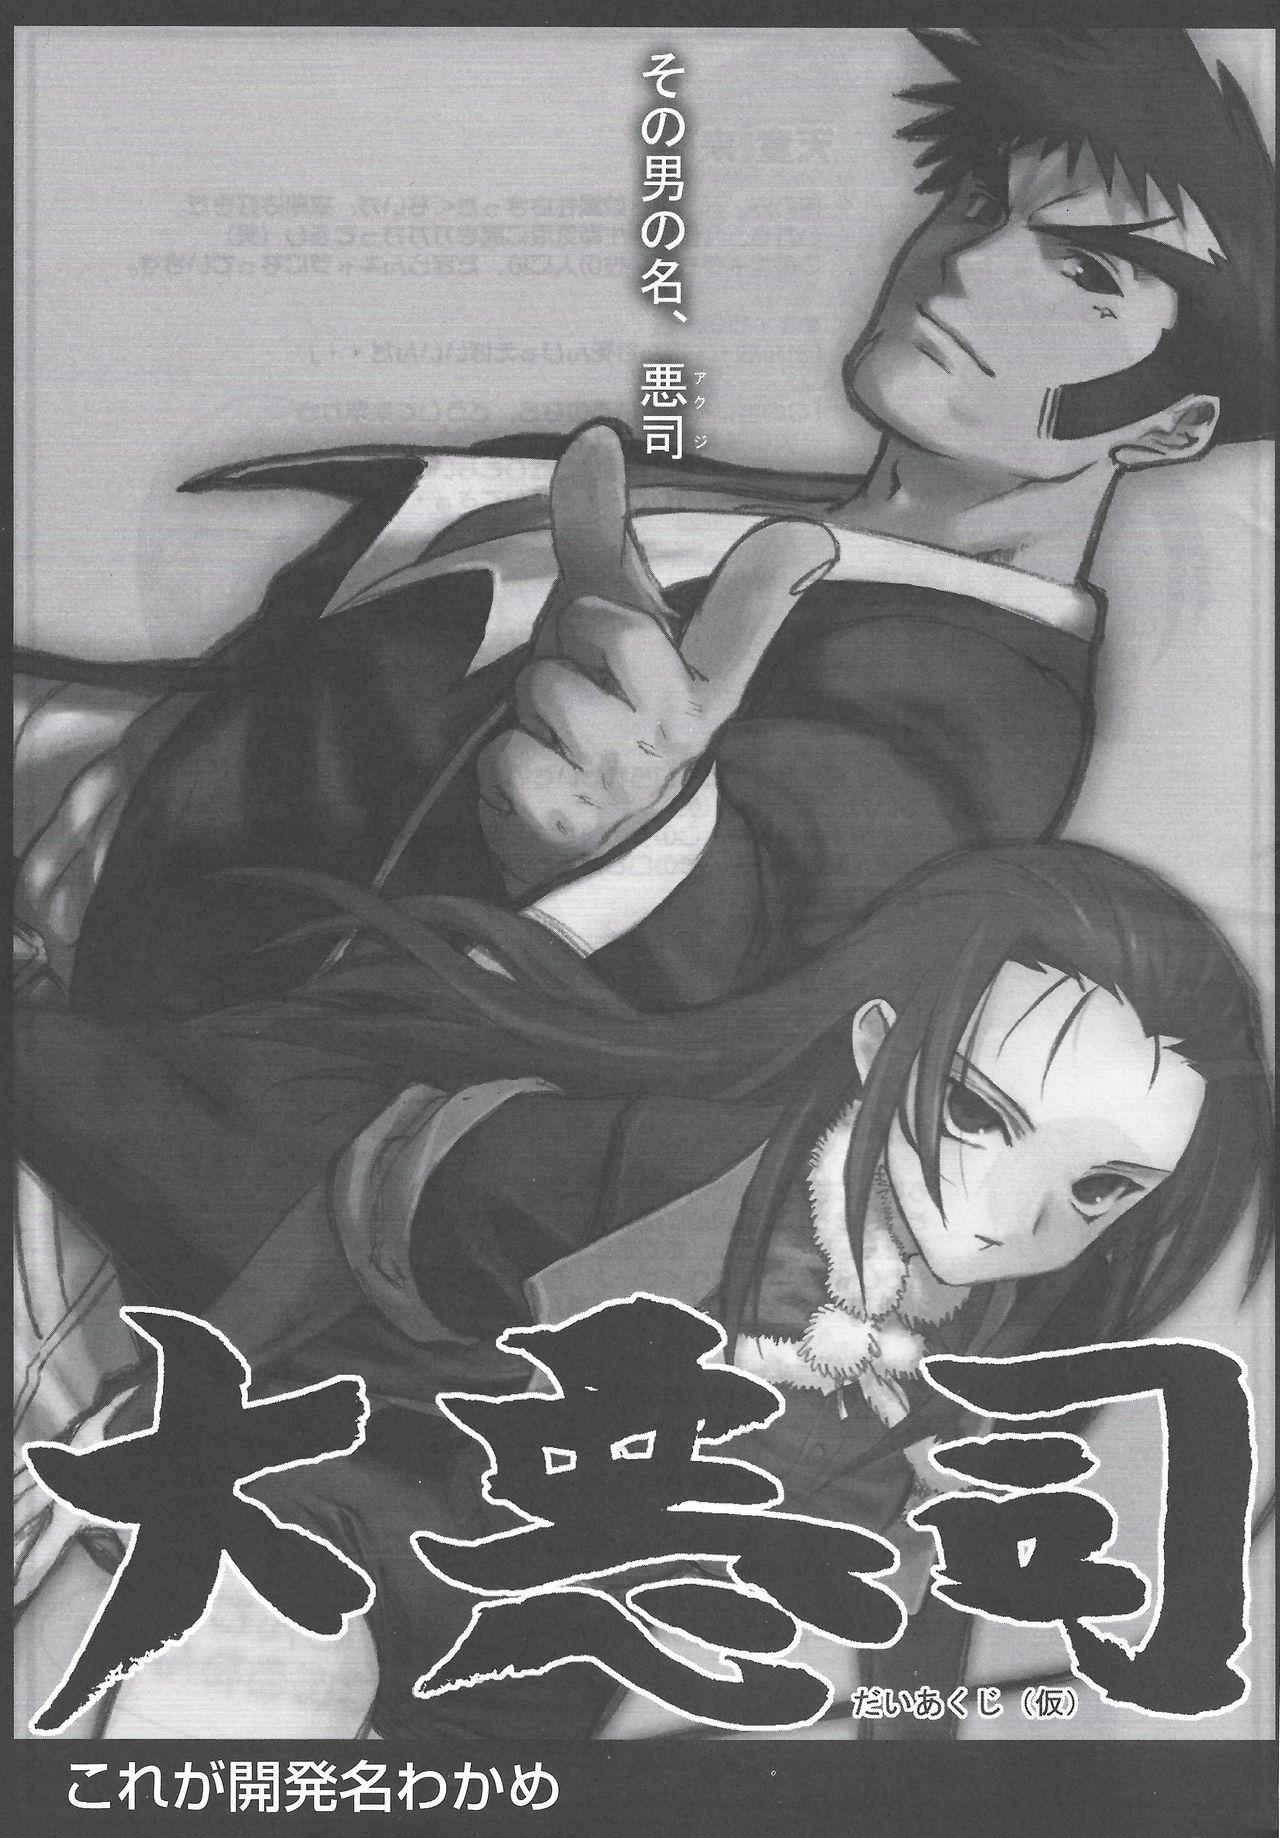 Arisu no Denchi Bakudan Vol. 16 7